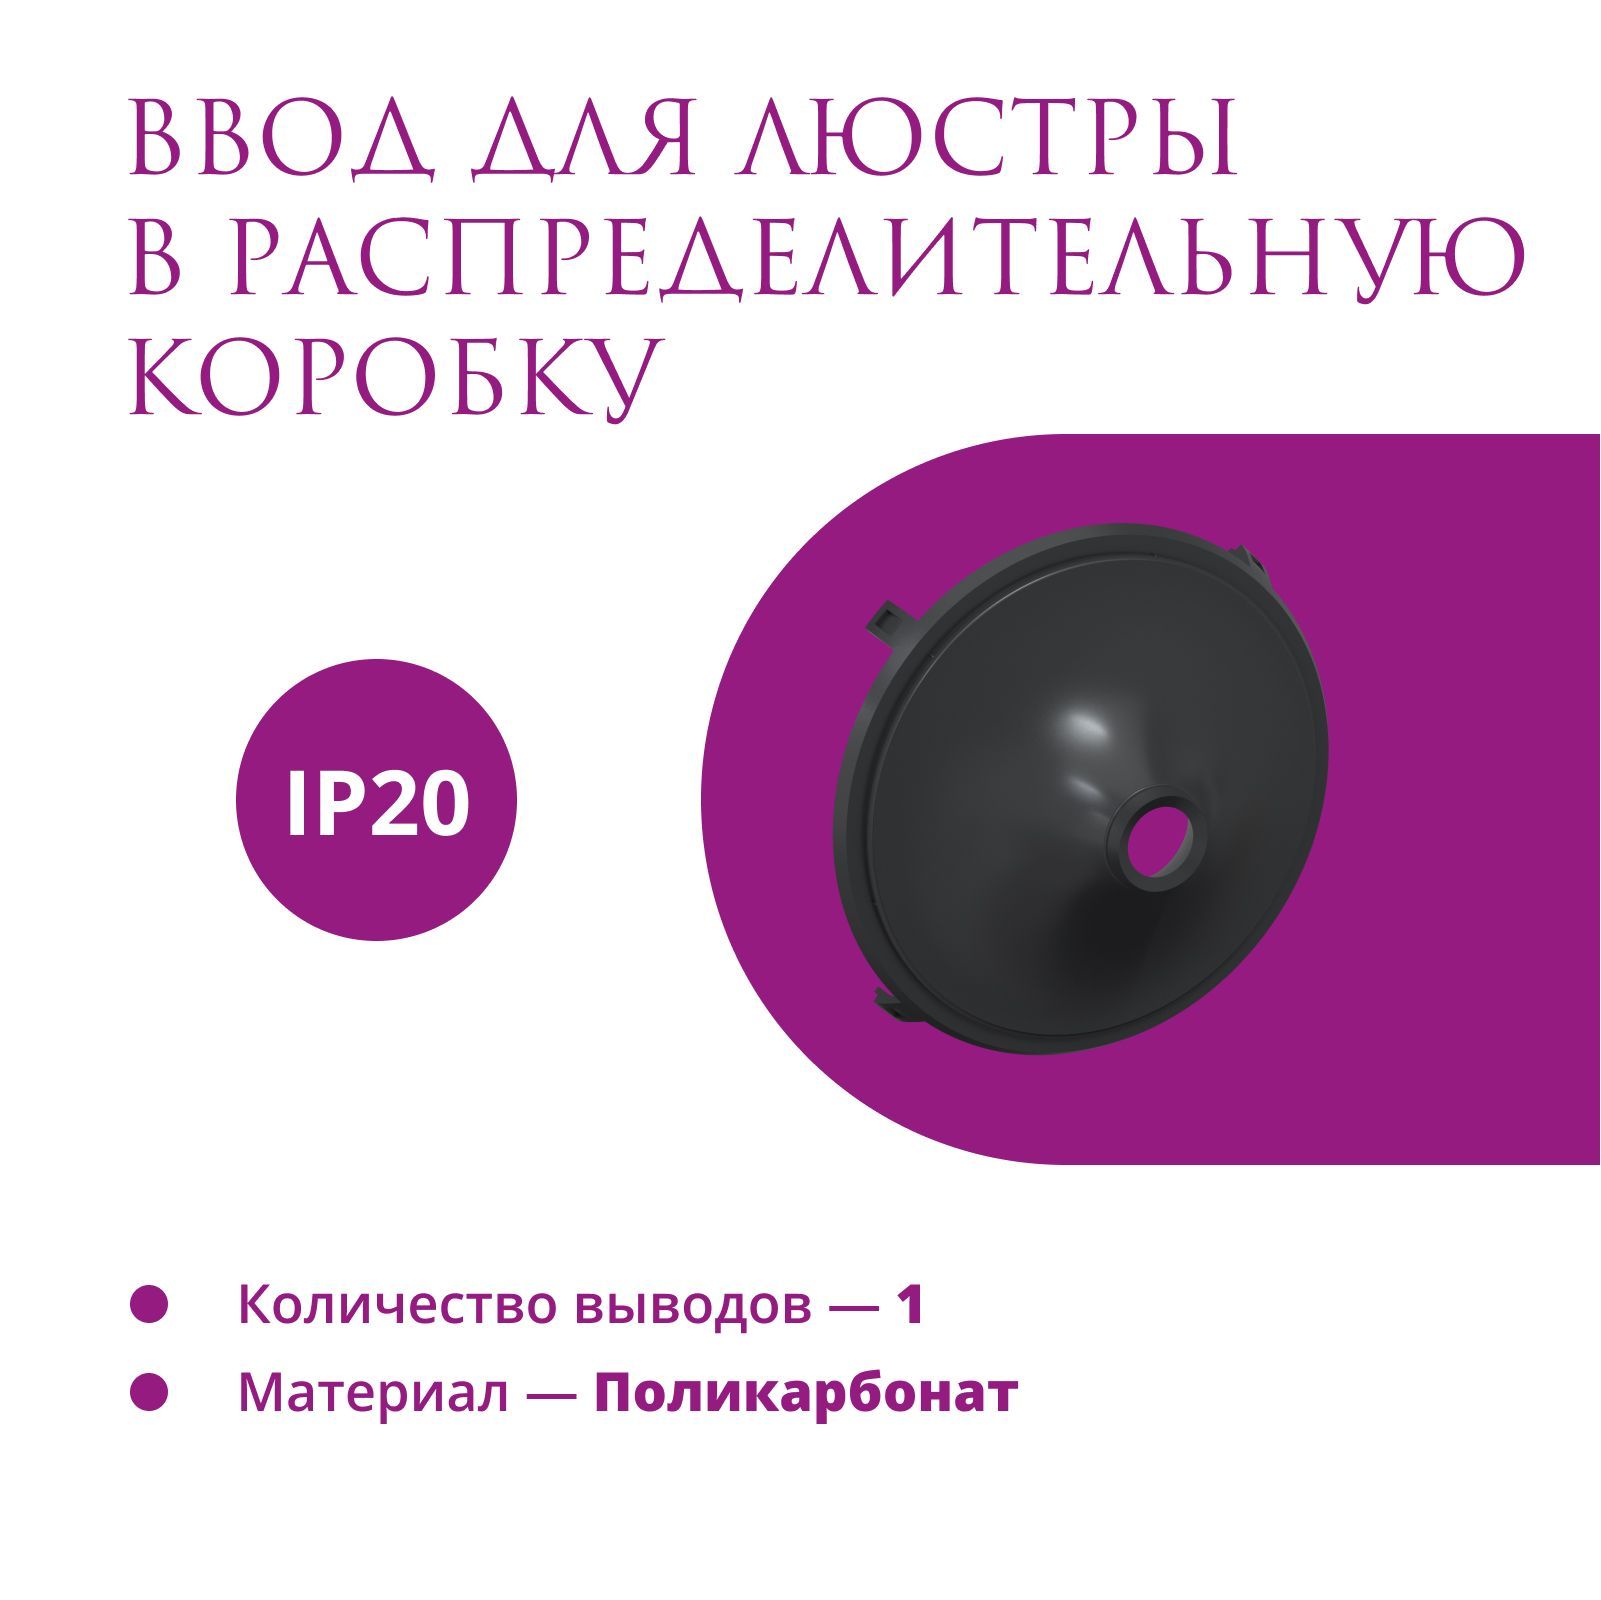 фото Ввод в распределительную коробку для светильника onekeyelectro (rotondo), цвет черный